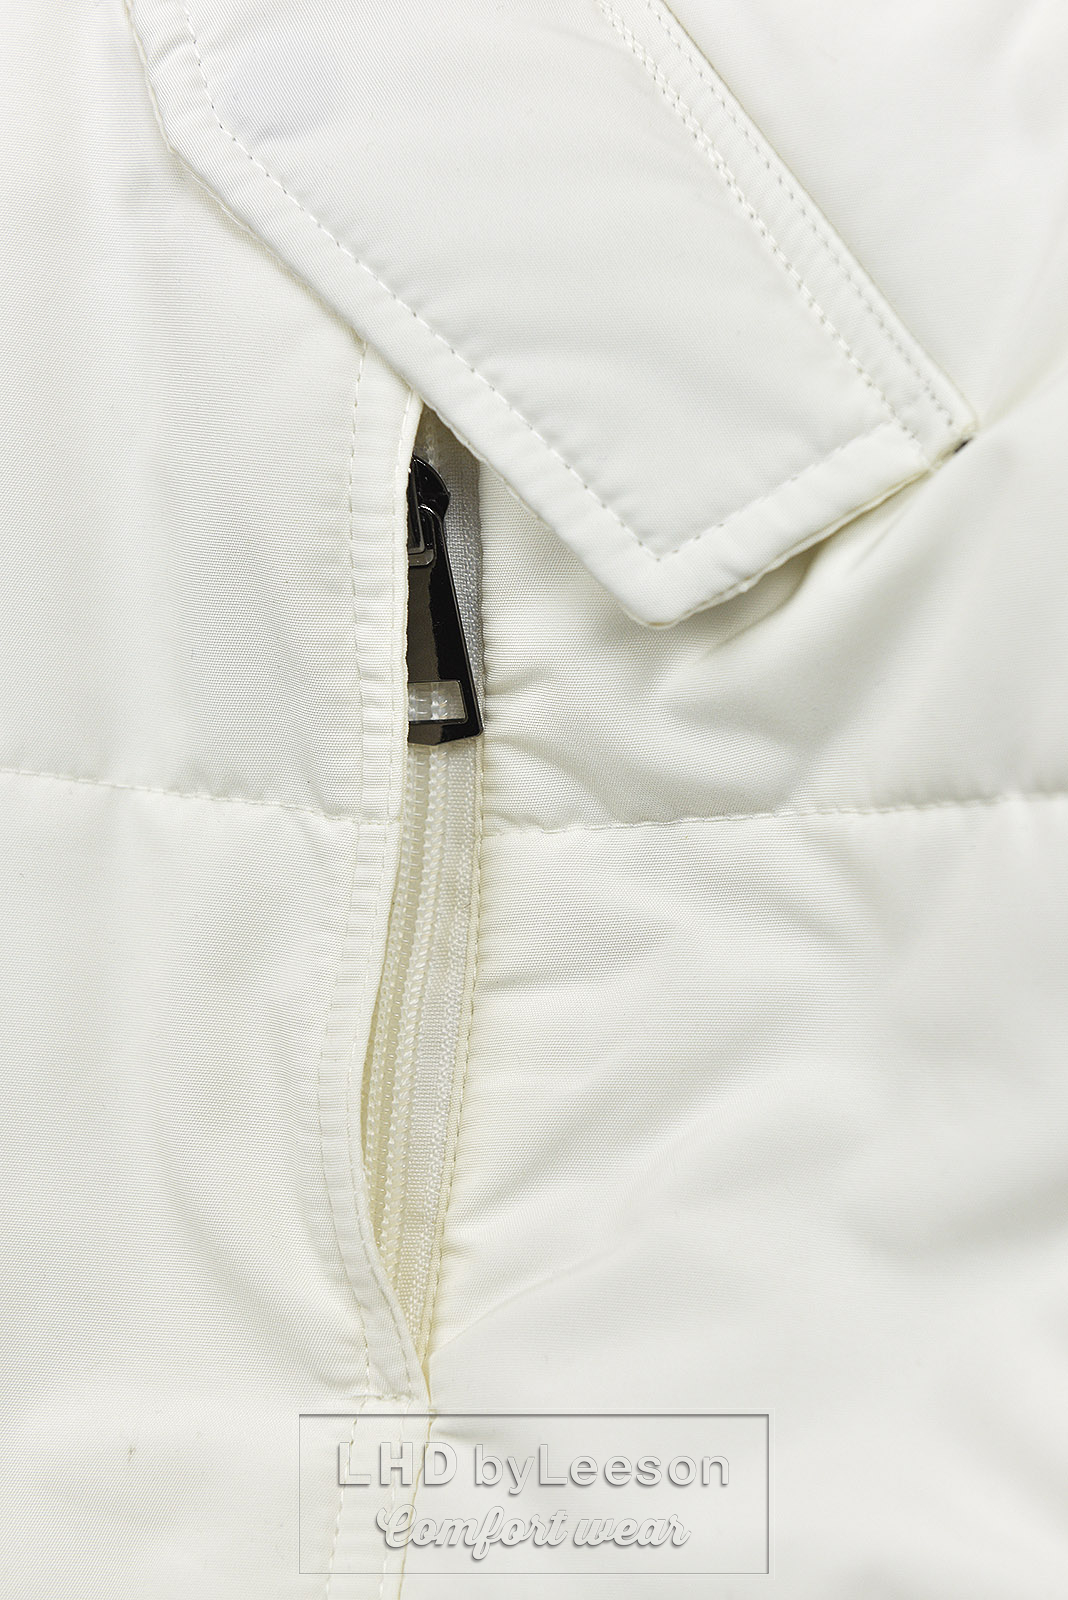 Kremowo-biała kurtka zimowa z szarym pluszem